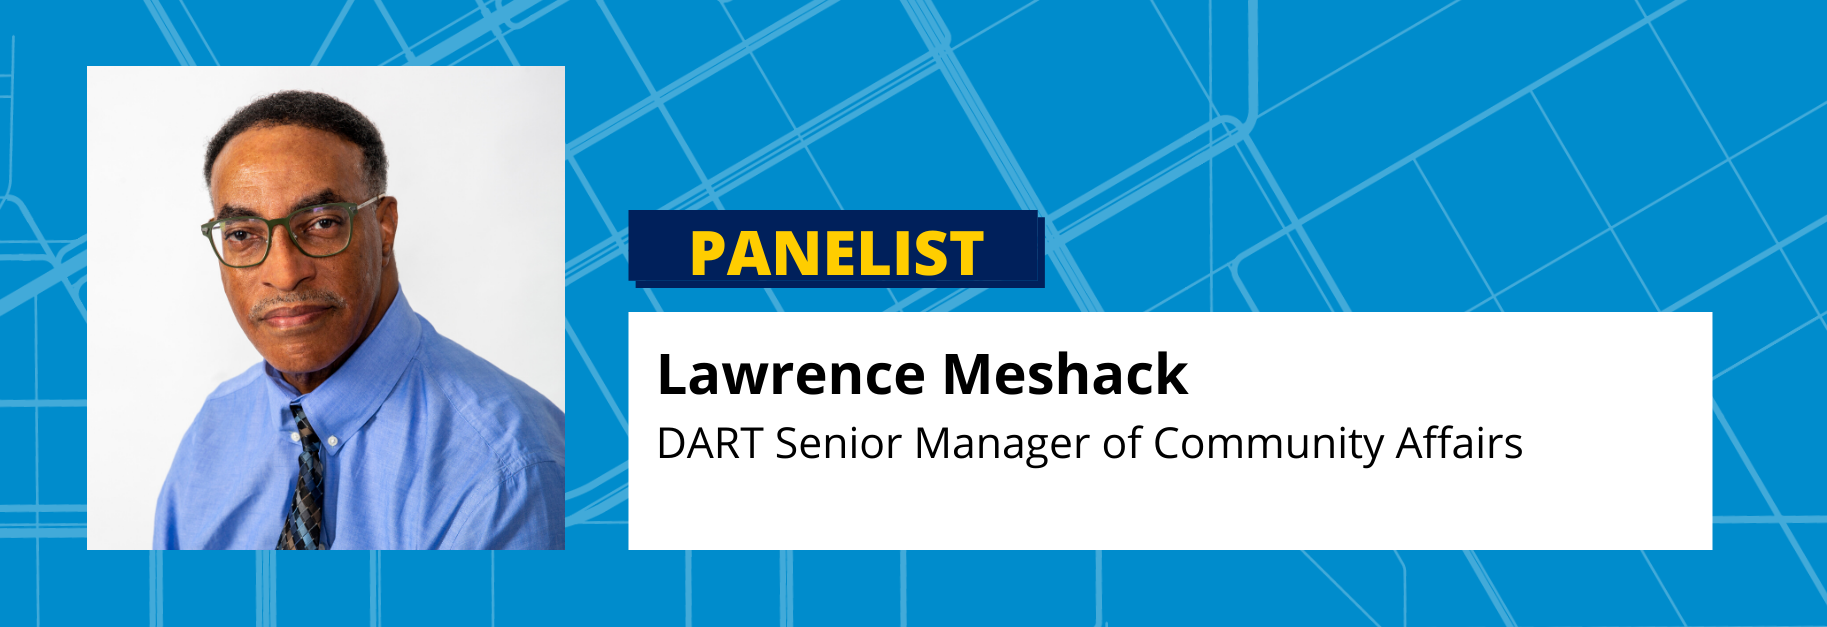 Lawrence Meshack DART Senior Manager of Community Affairs